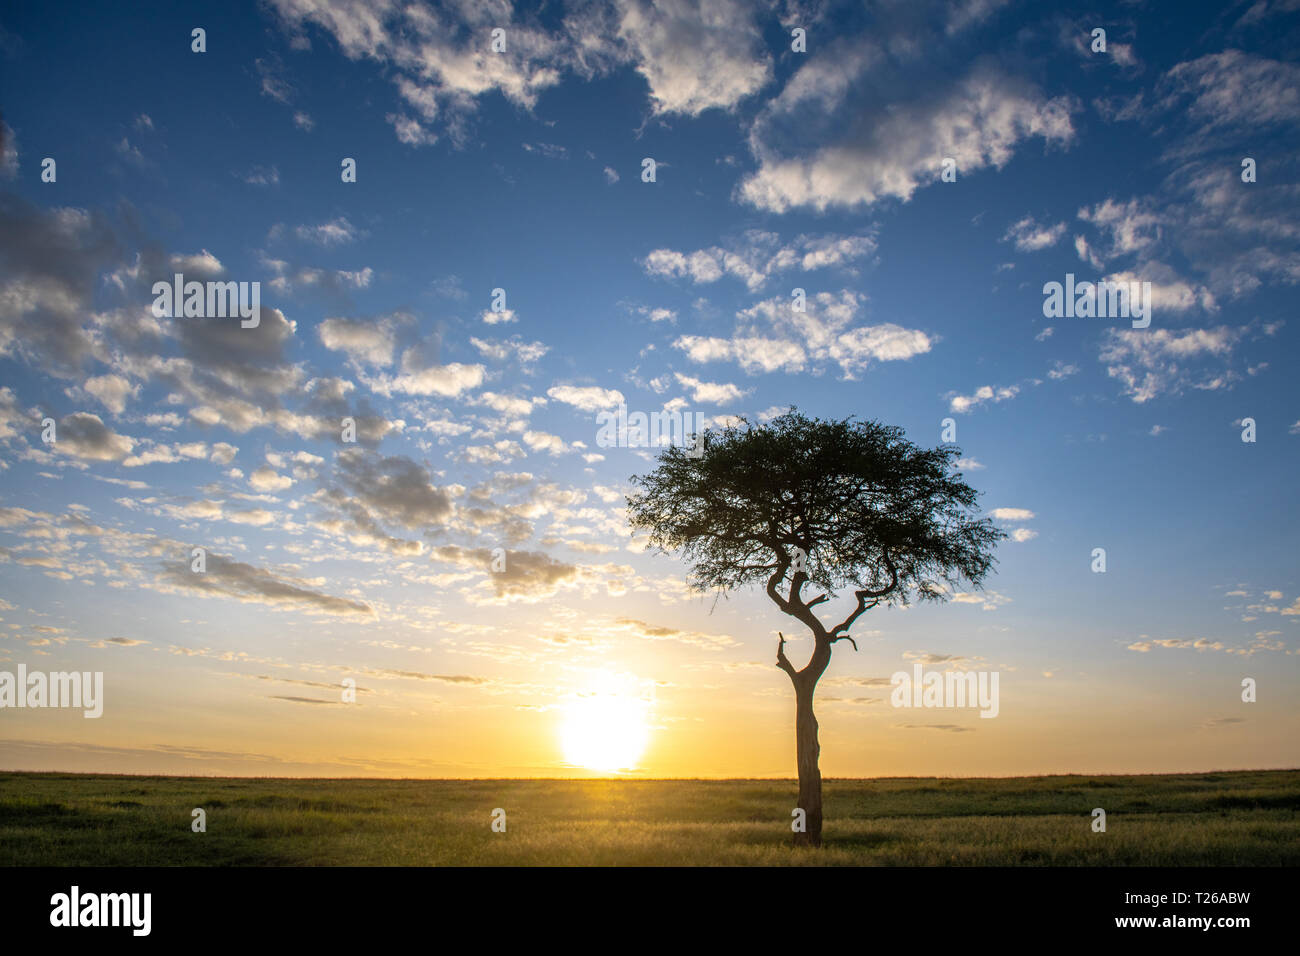 El sol se levanta en el horizonte como una singular árbol Acaci destaca en el paisaje, Reserva Nacional Maasai Mara, Kenya, Africa. Foto de stock